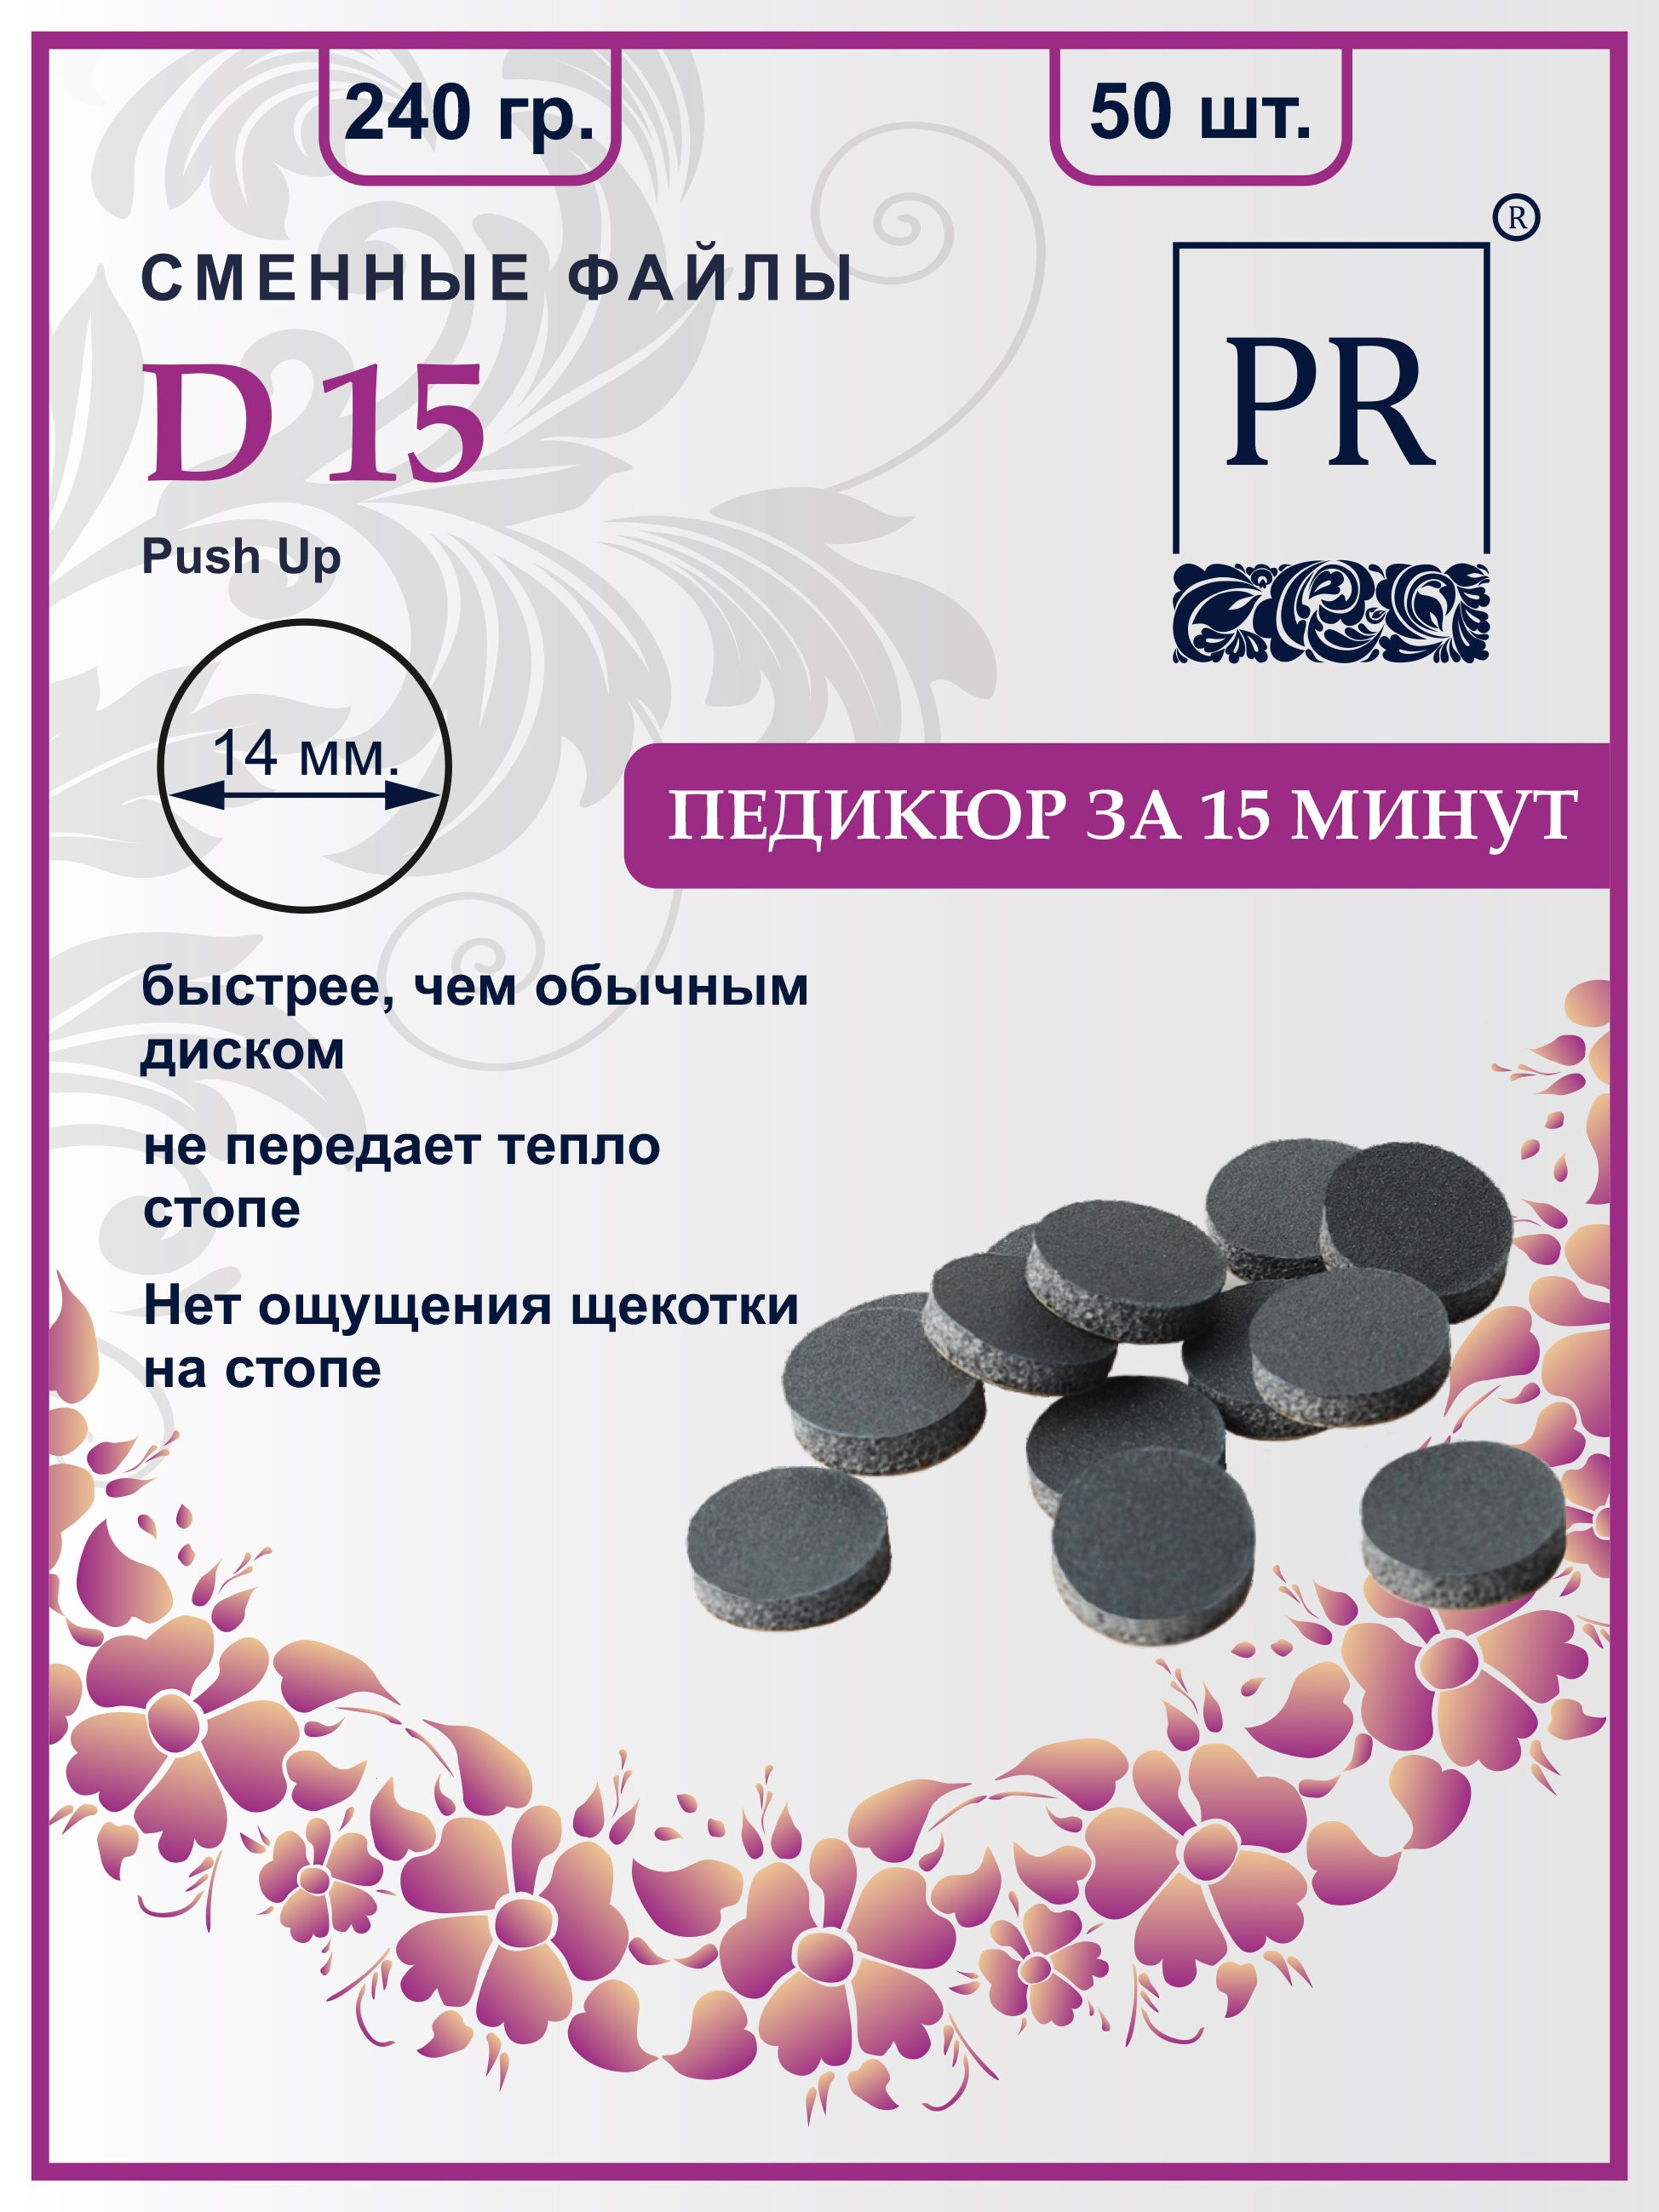 Сменные файлы Pilochki Russia диски Push Up для педикюра для диска S 240 грит 50 штук